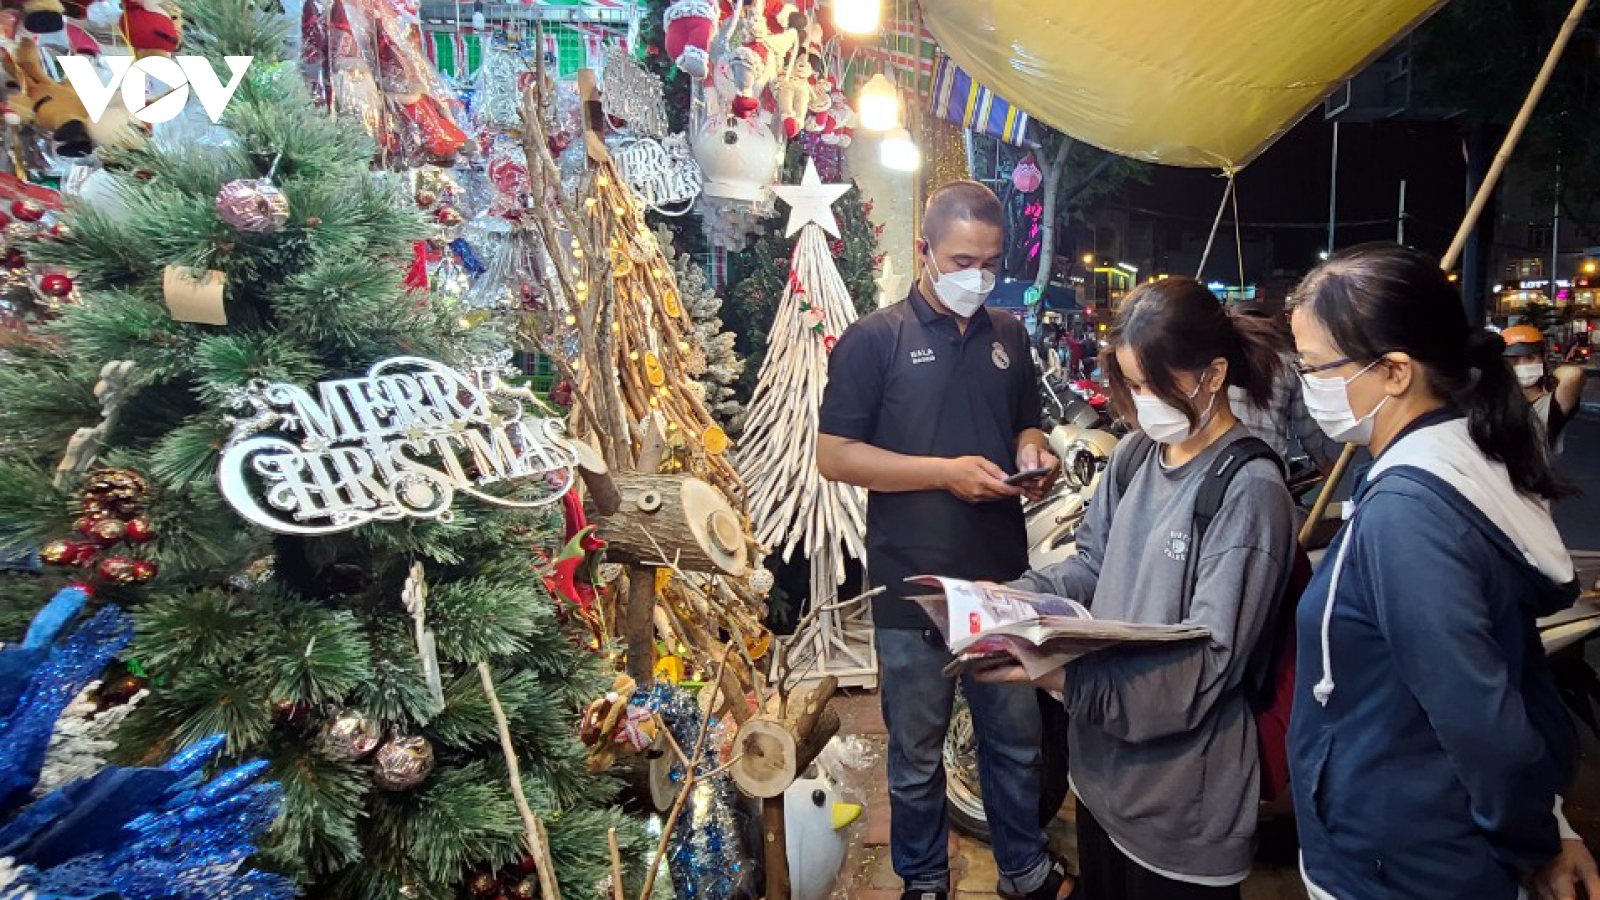 Thị trường trang trí Noel tại TP.HCM: Sức mua giảm, hàng giá rẻ lên ngôi